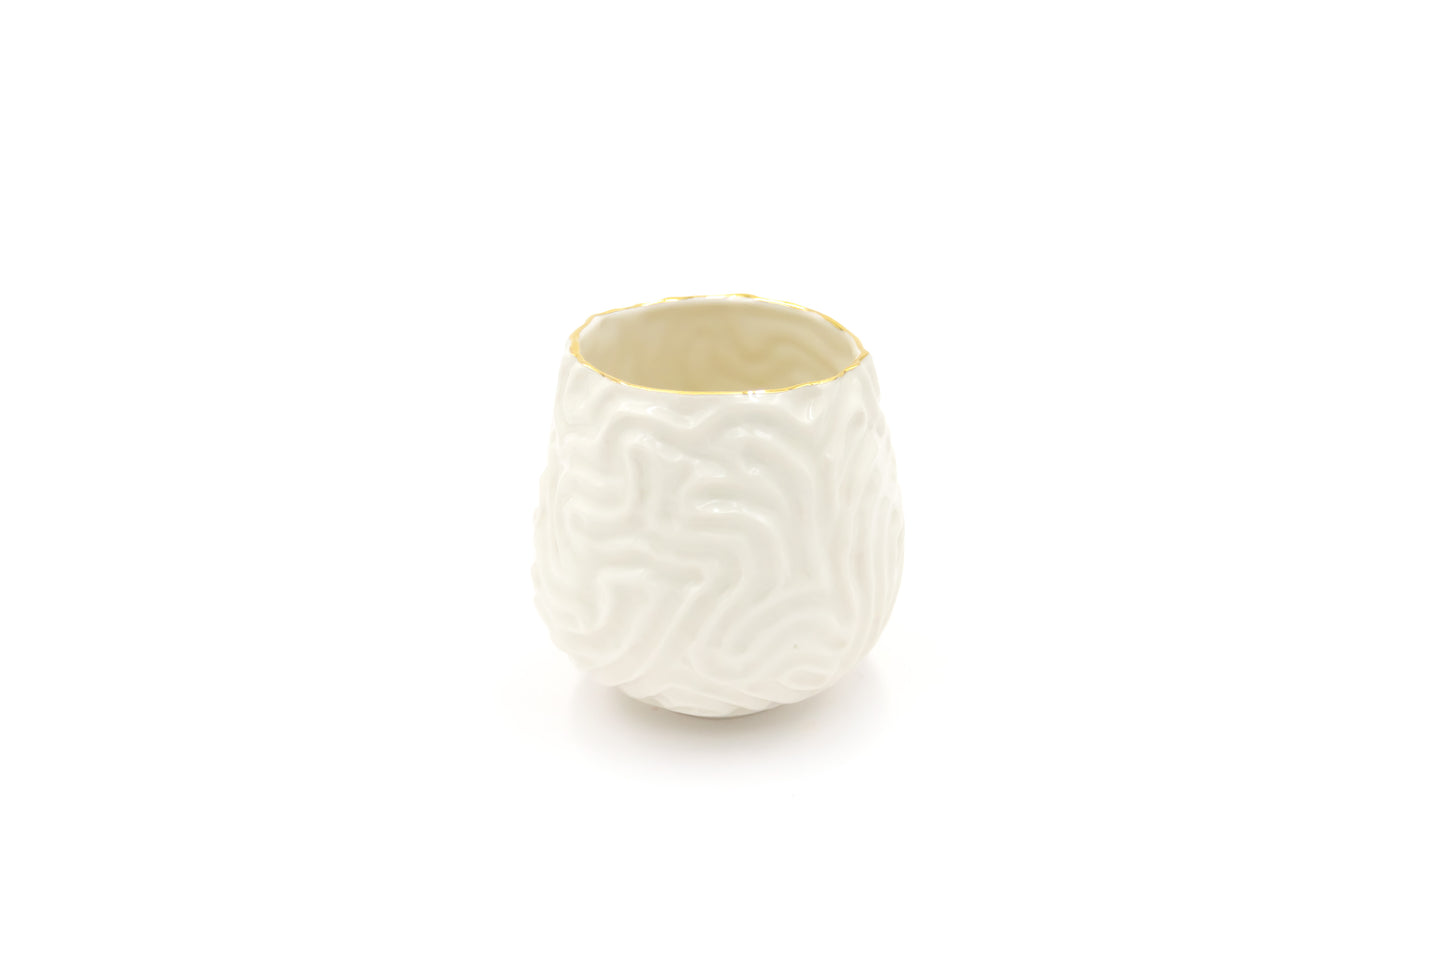 Czarka porcelanowa w kolorze białym ze złoceniem